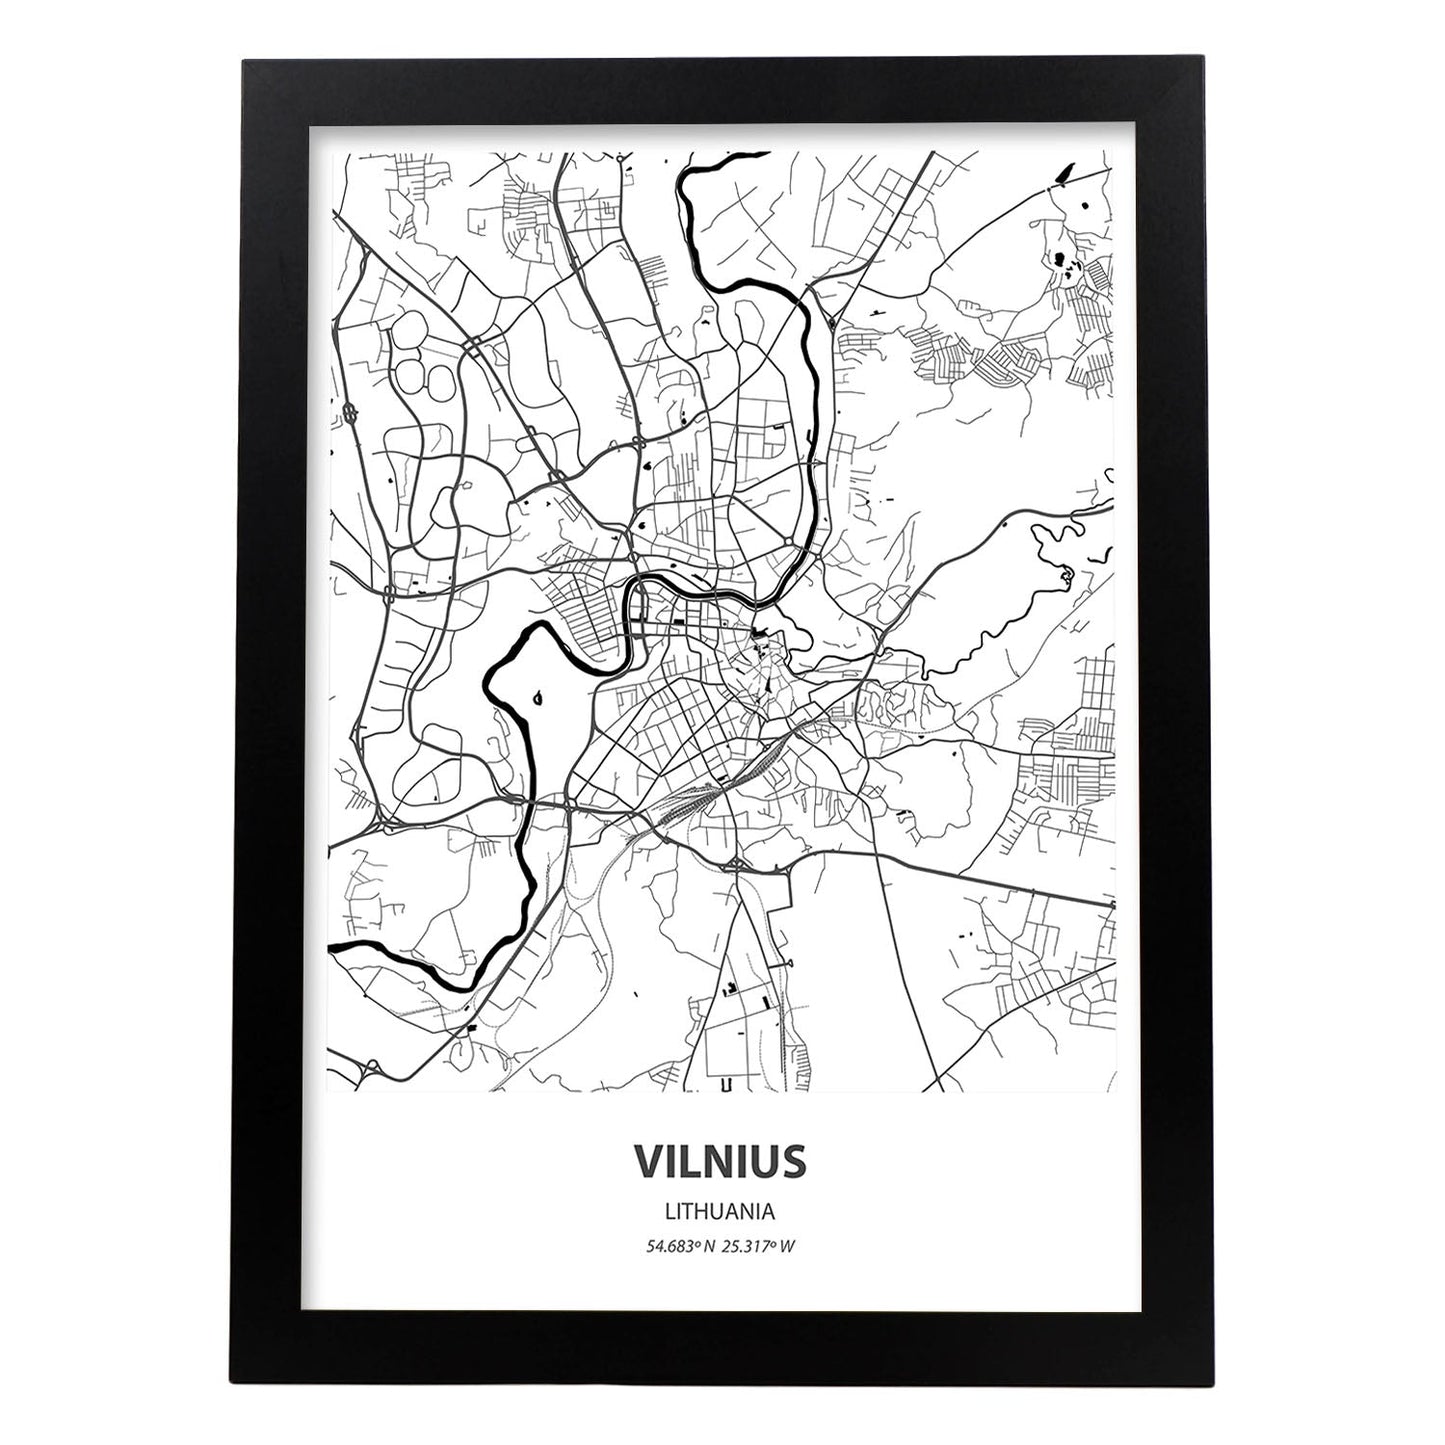 Poster con mapa de Vilnus - Lituania. Láminas de ciudades de Europa con mares y ríos en color negro.-Artwork-Nacnic-A4-Marco Negro-Nacnic Estudio SL